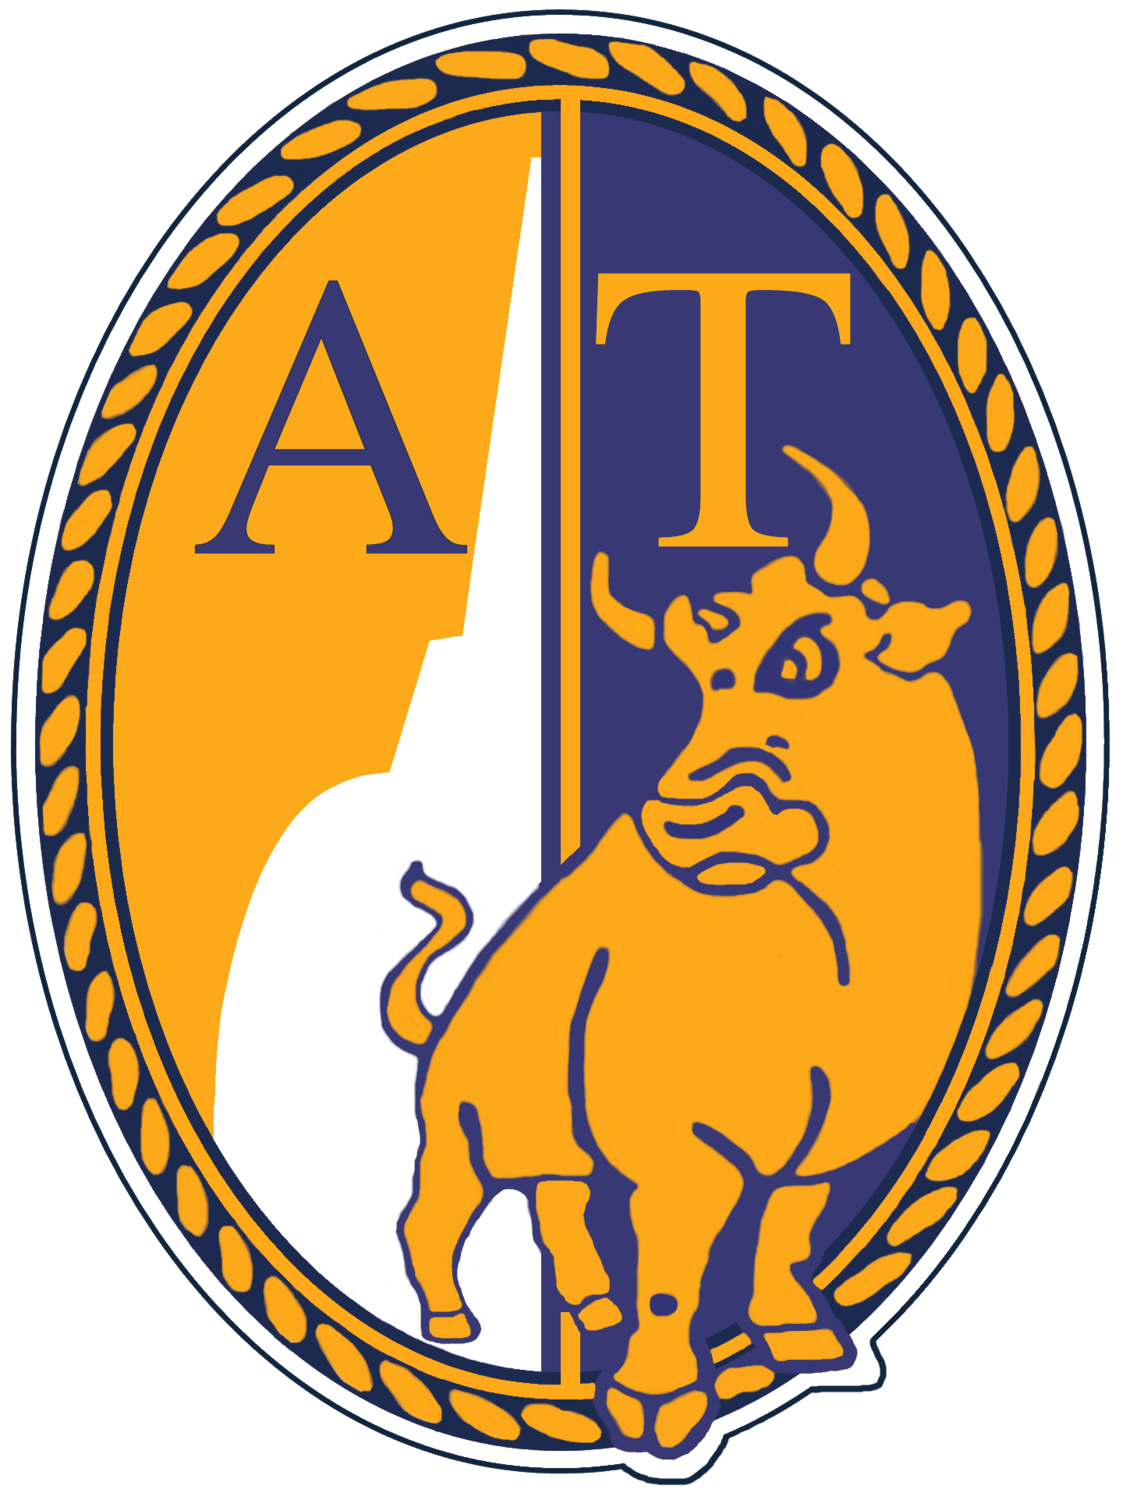 Wappen ASD Atletico Torino